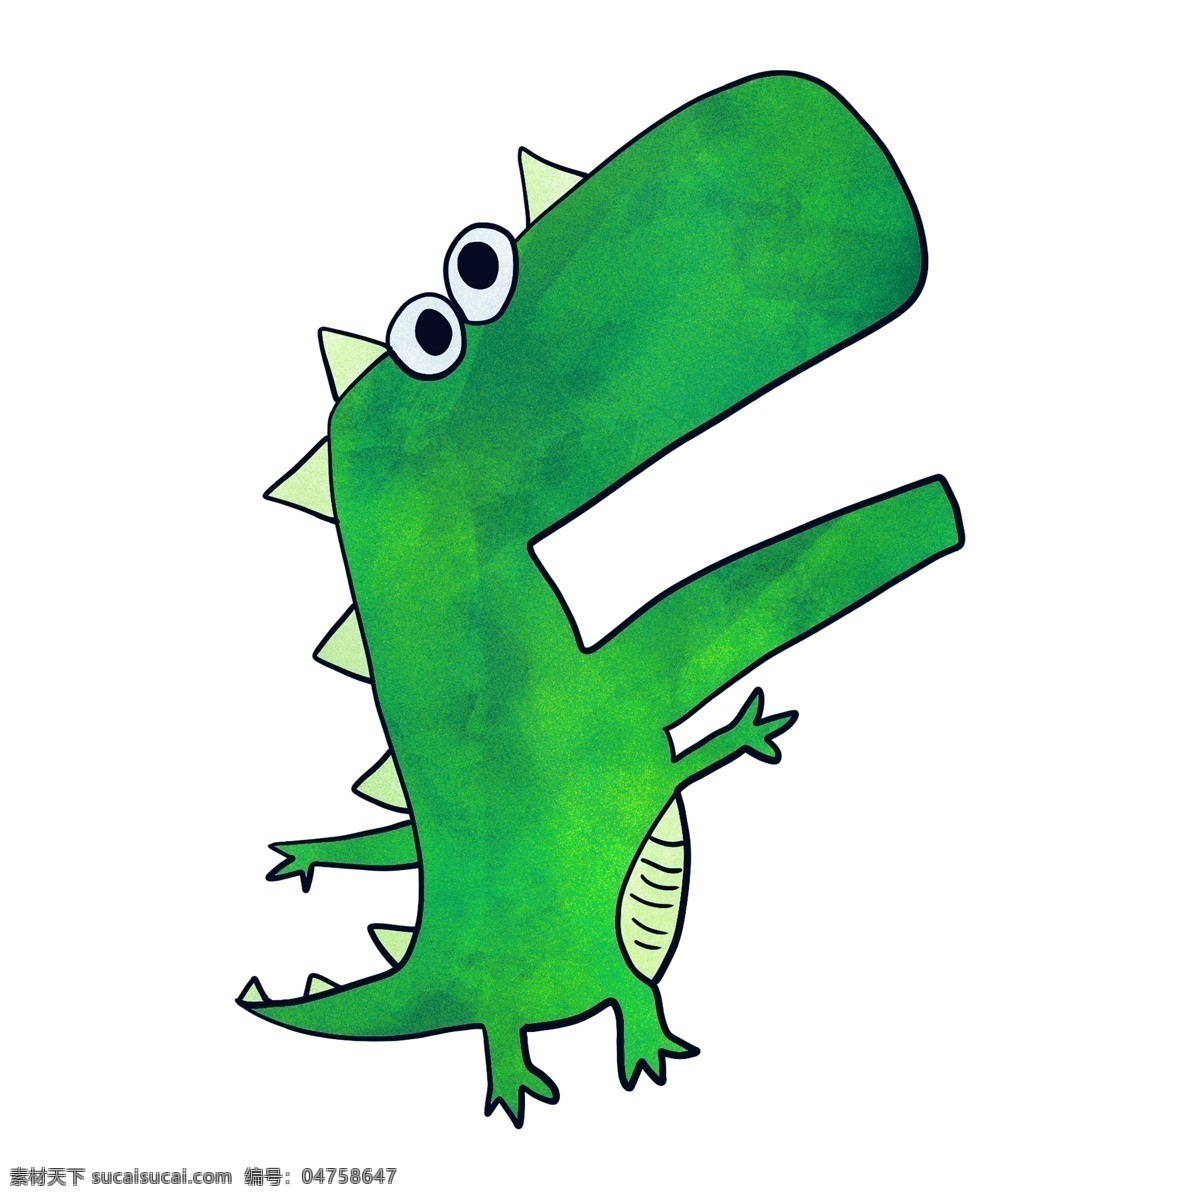 张大 嘴 绿色 小 恐龙 张嘴巴的恐龙 绿色的小恐龙 站立 卡通 动物 小动物 可爱恐龙 动物插画